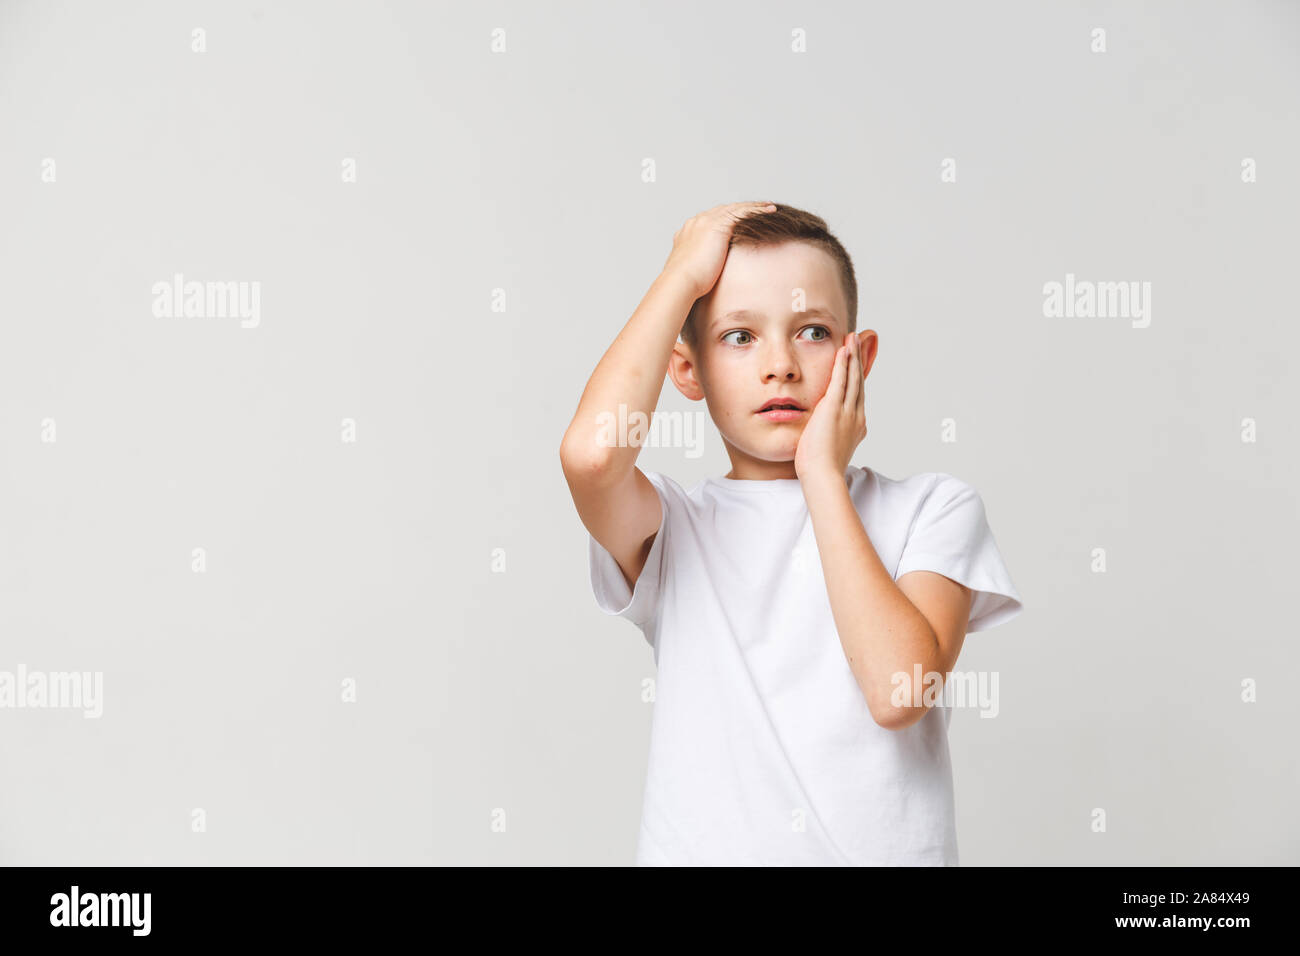 Asustado muchacho en camiseta blanca con ambas manos sobre la cabeza sobre fondo gris Foto de stock